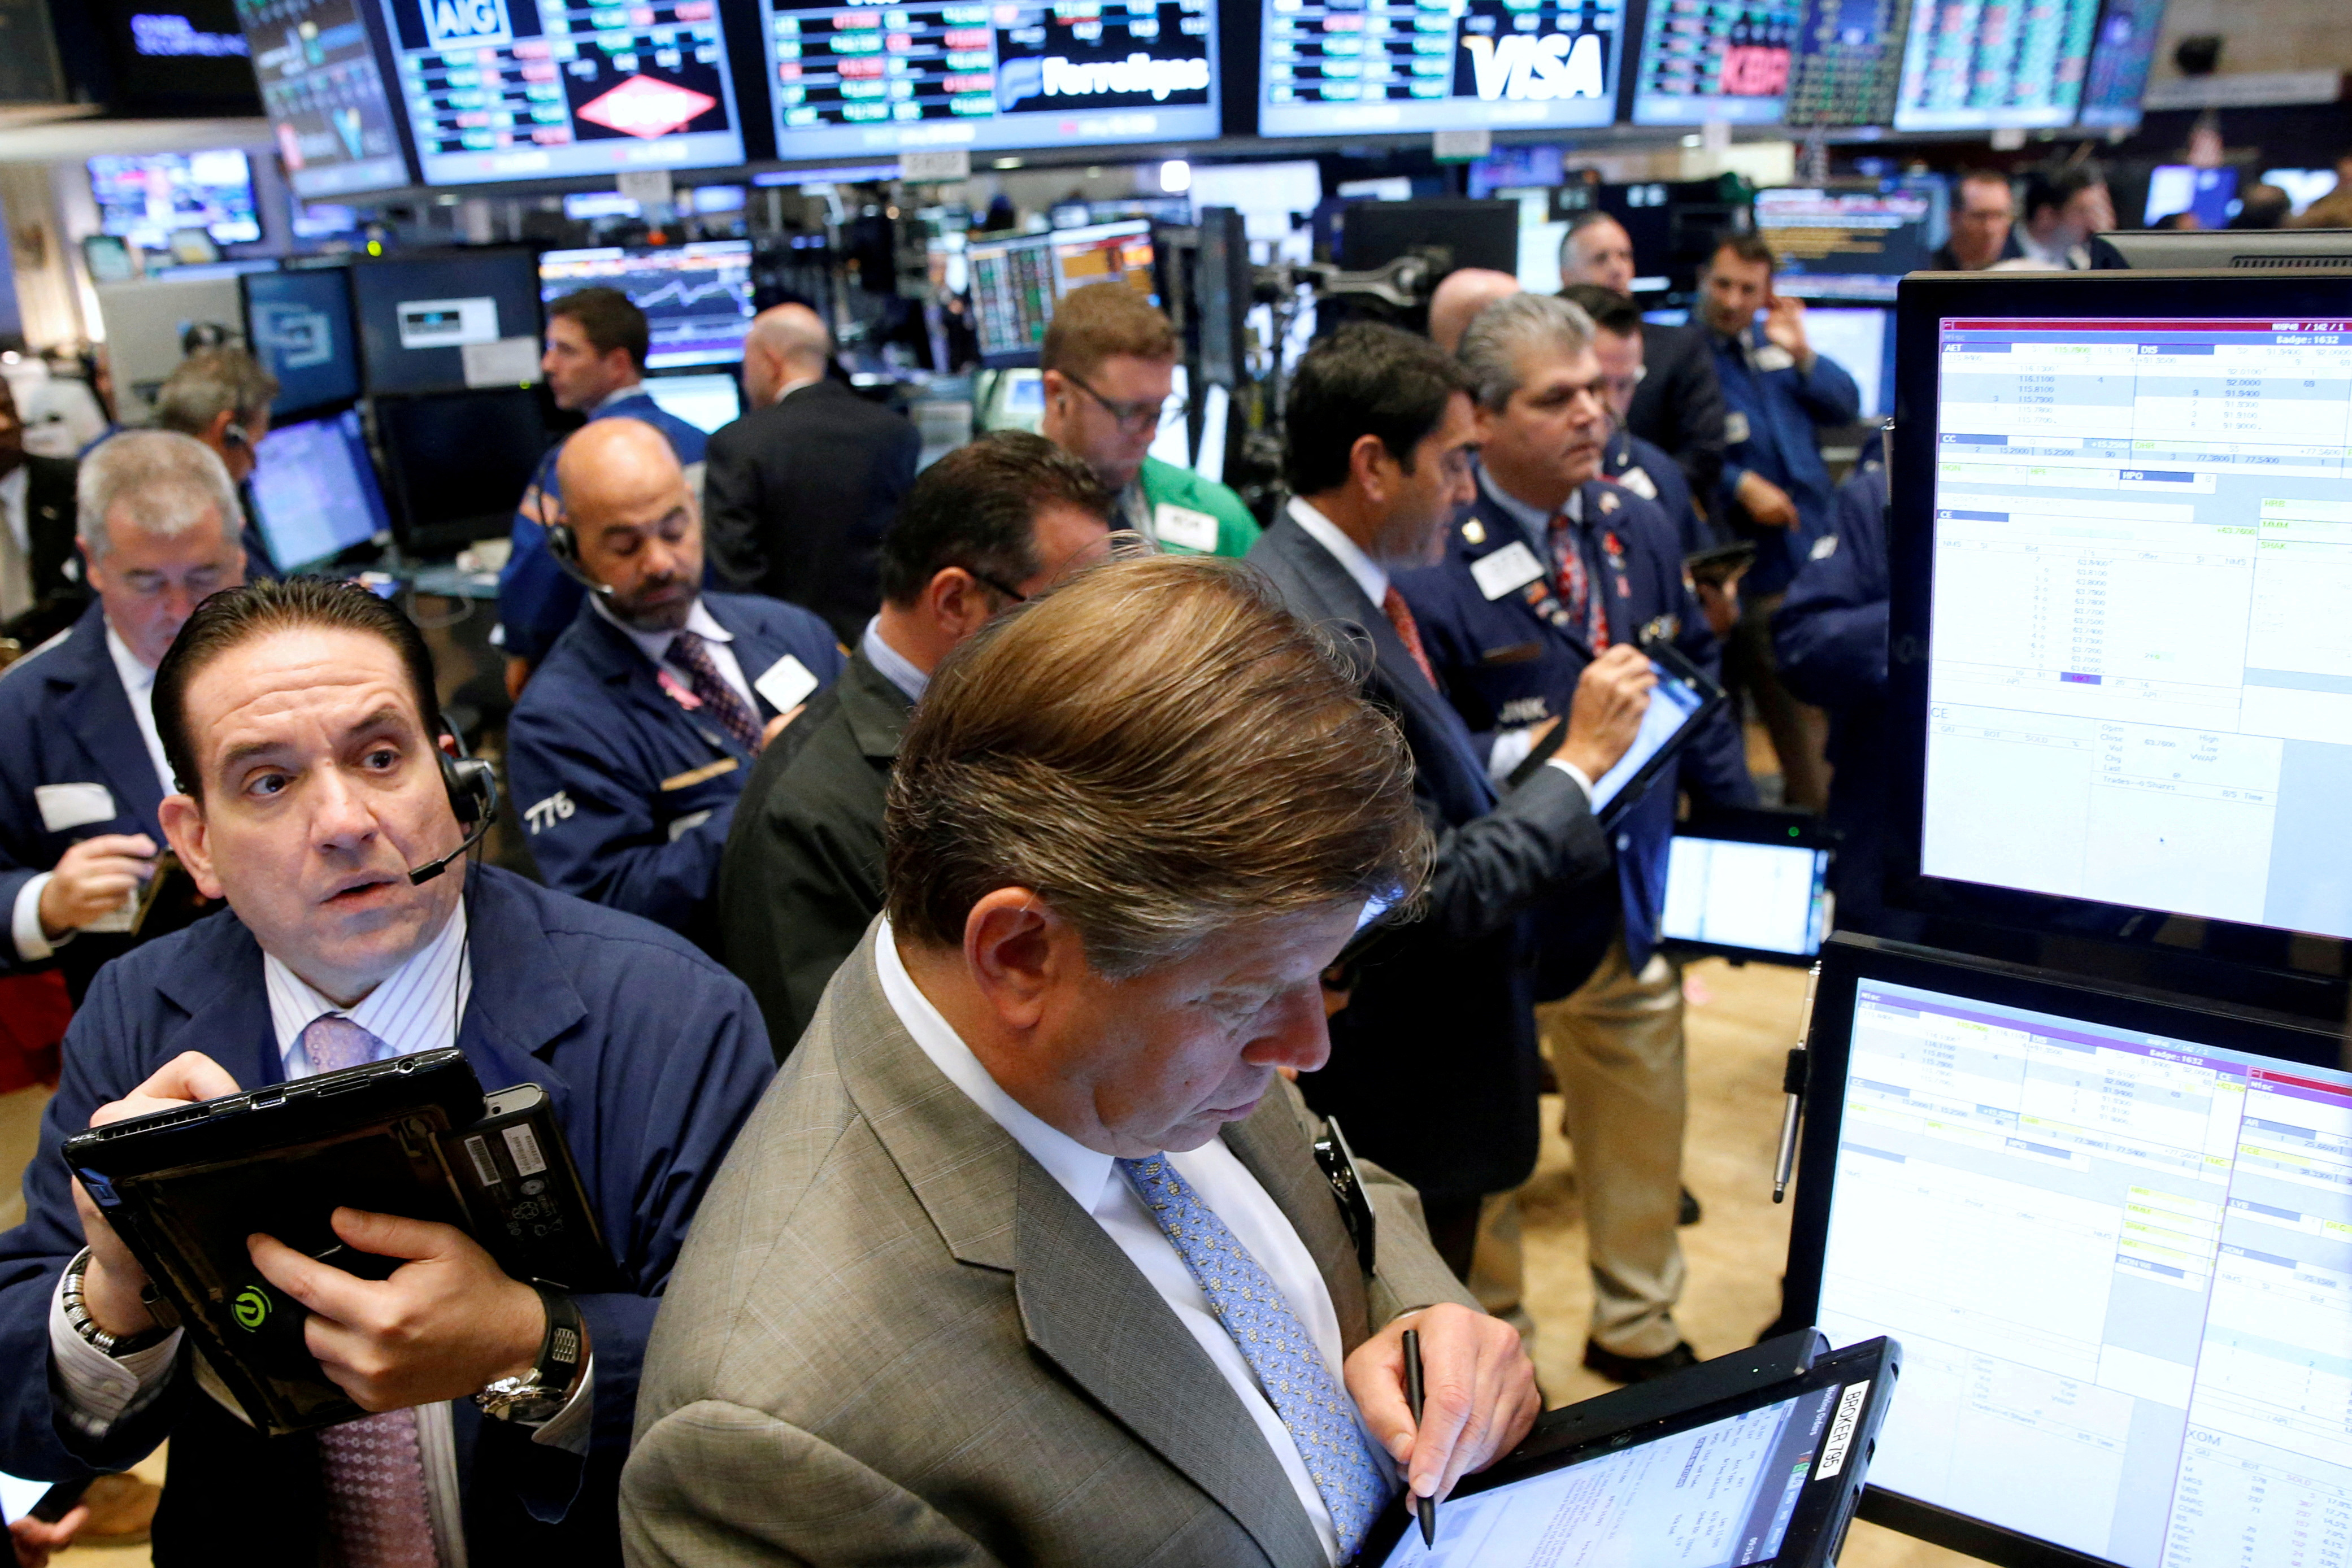 Tras las turbulencias por las quiebras de bancos, Wall Street recuperó la calma y cerró con ganancias